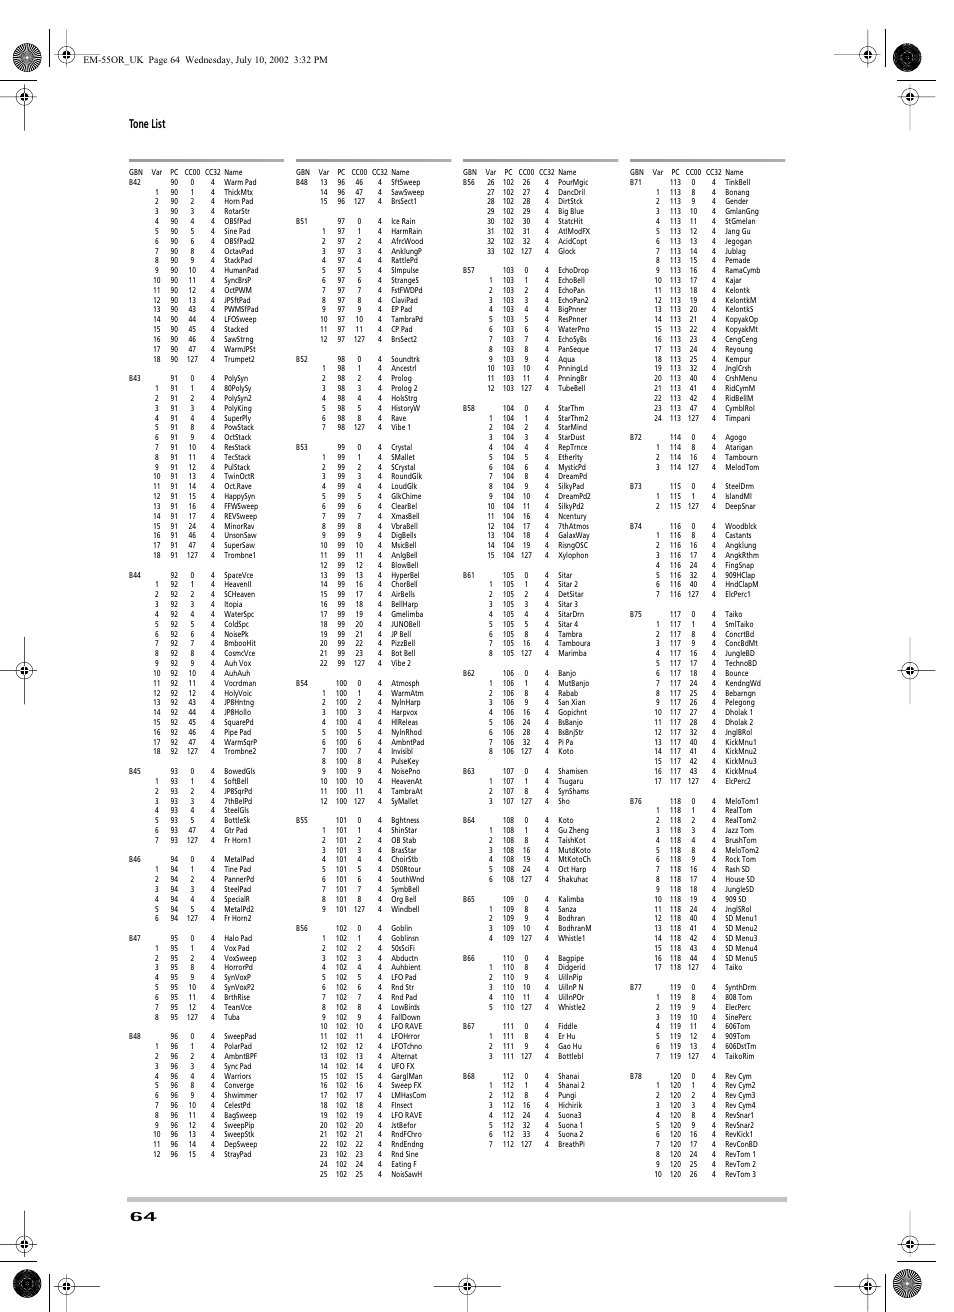 Tone list | Roland EM-55 User Manual | Page 64 / 98 | Original mode